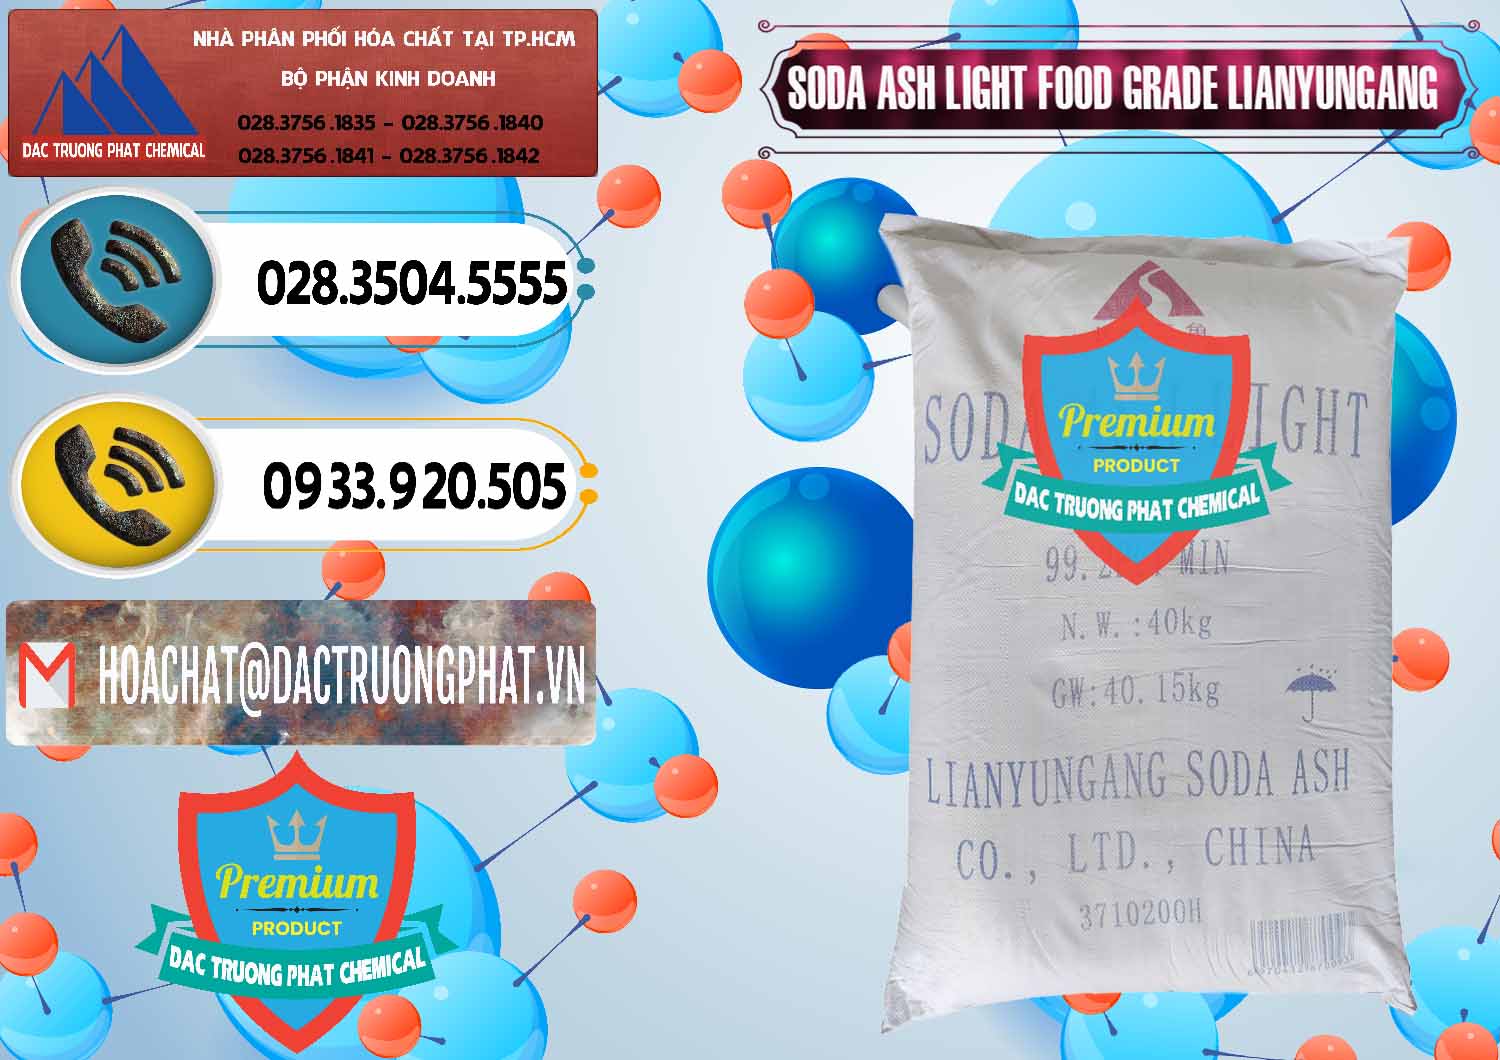 Đơn vị chuyên cung cấp ( bán ) Soda Ash Light - NA2CO3 Food Grade Lianyungang Trung Quốc - 0222 - Công ty cung cấp & phân phối hóa chất tại TP.HCM - hoachatdetnhuom.vn